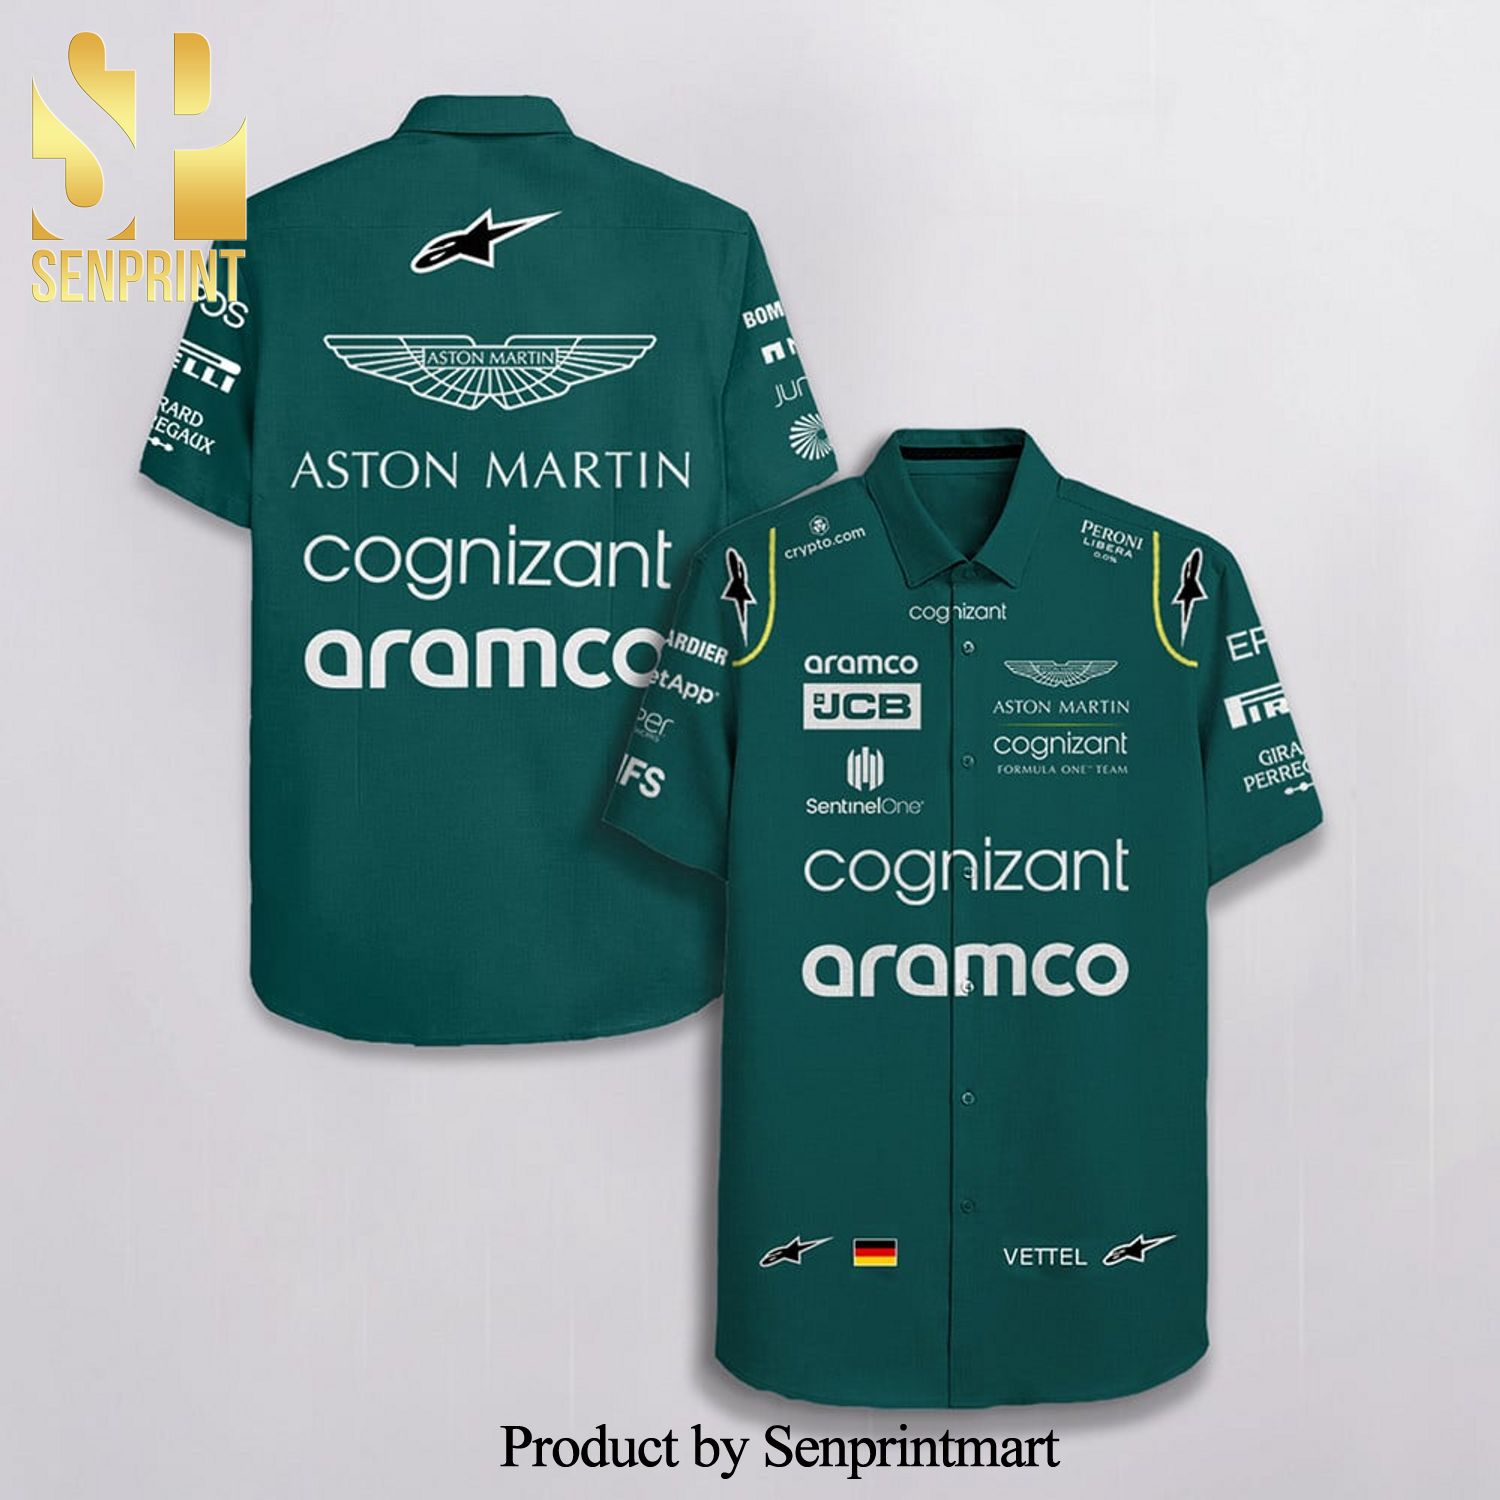 Sebastian Vettel Aston Martin F1 Team Racing Cognizant Aramco Jcb Alpinestars Full Printing Hawaiian Shirt